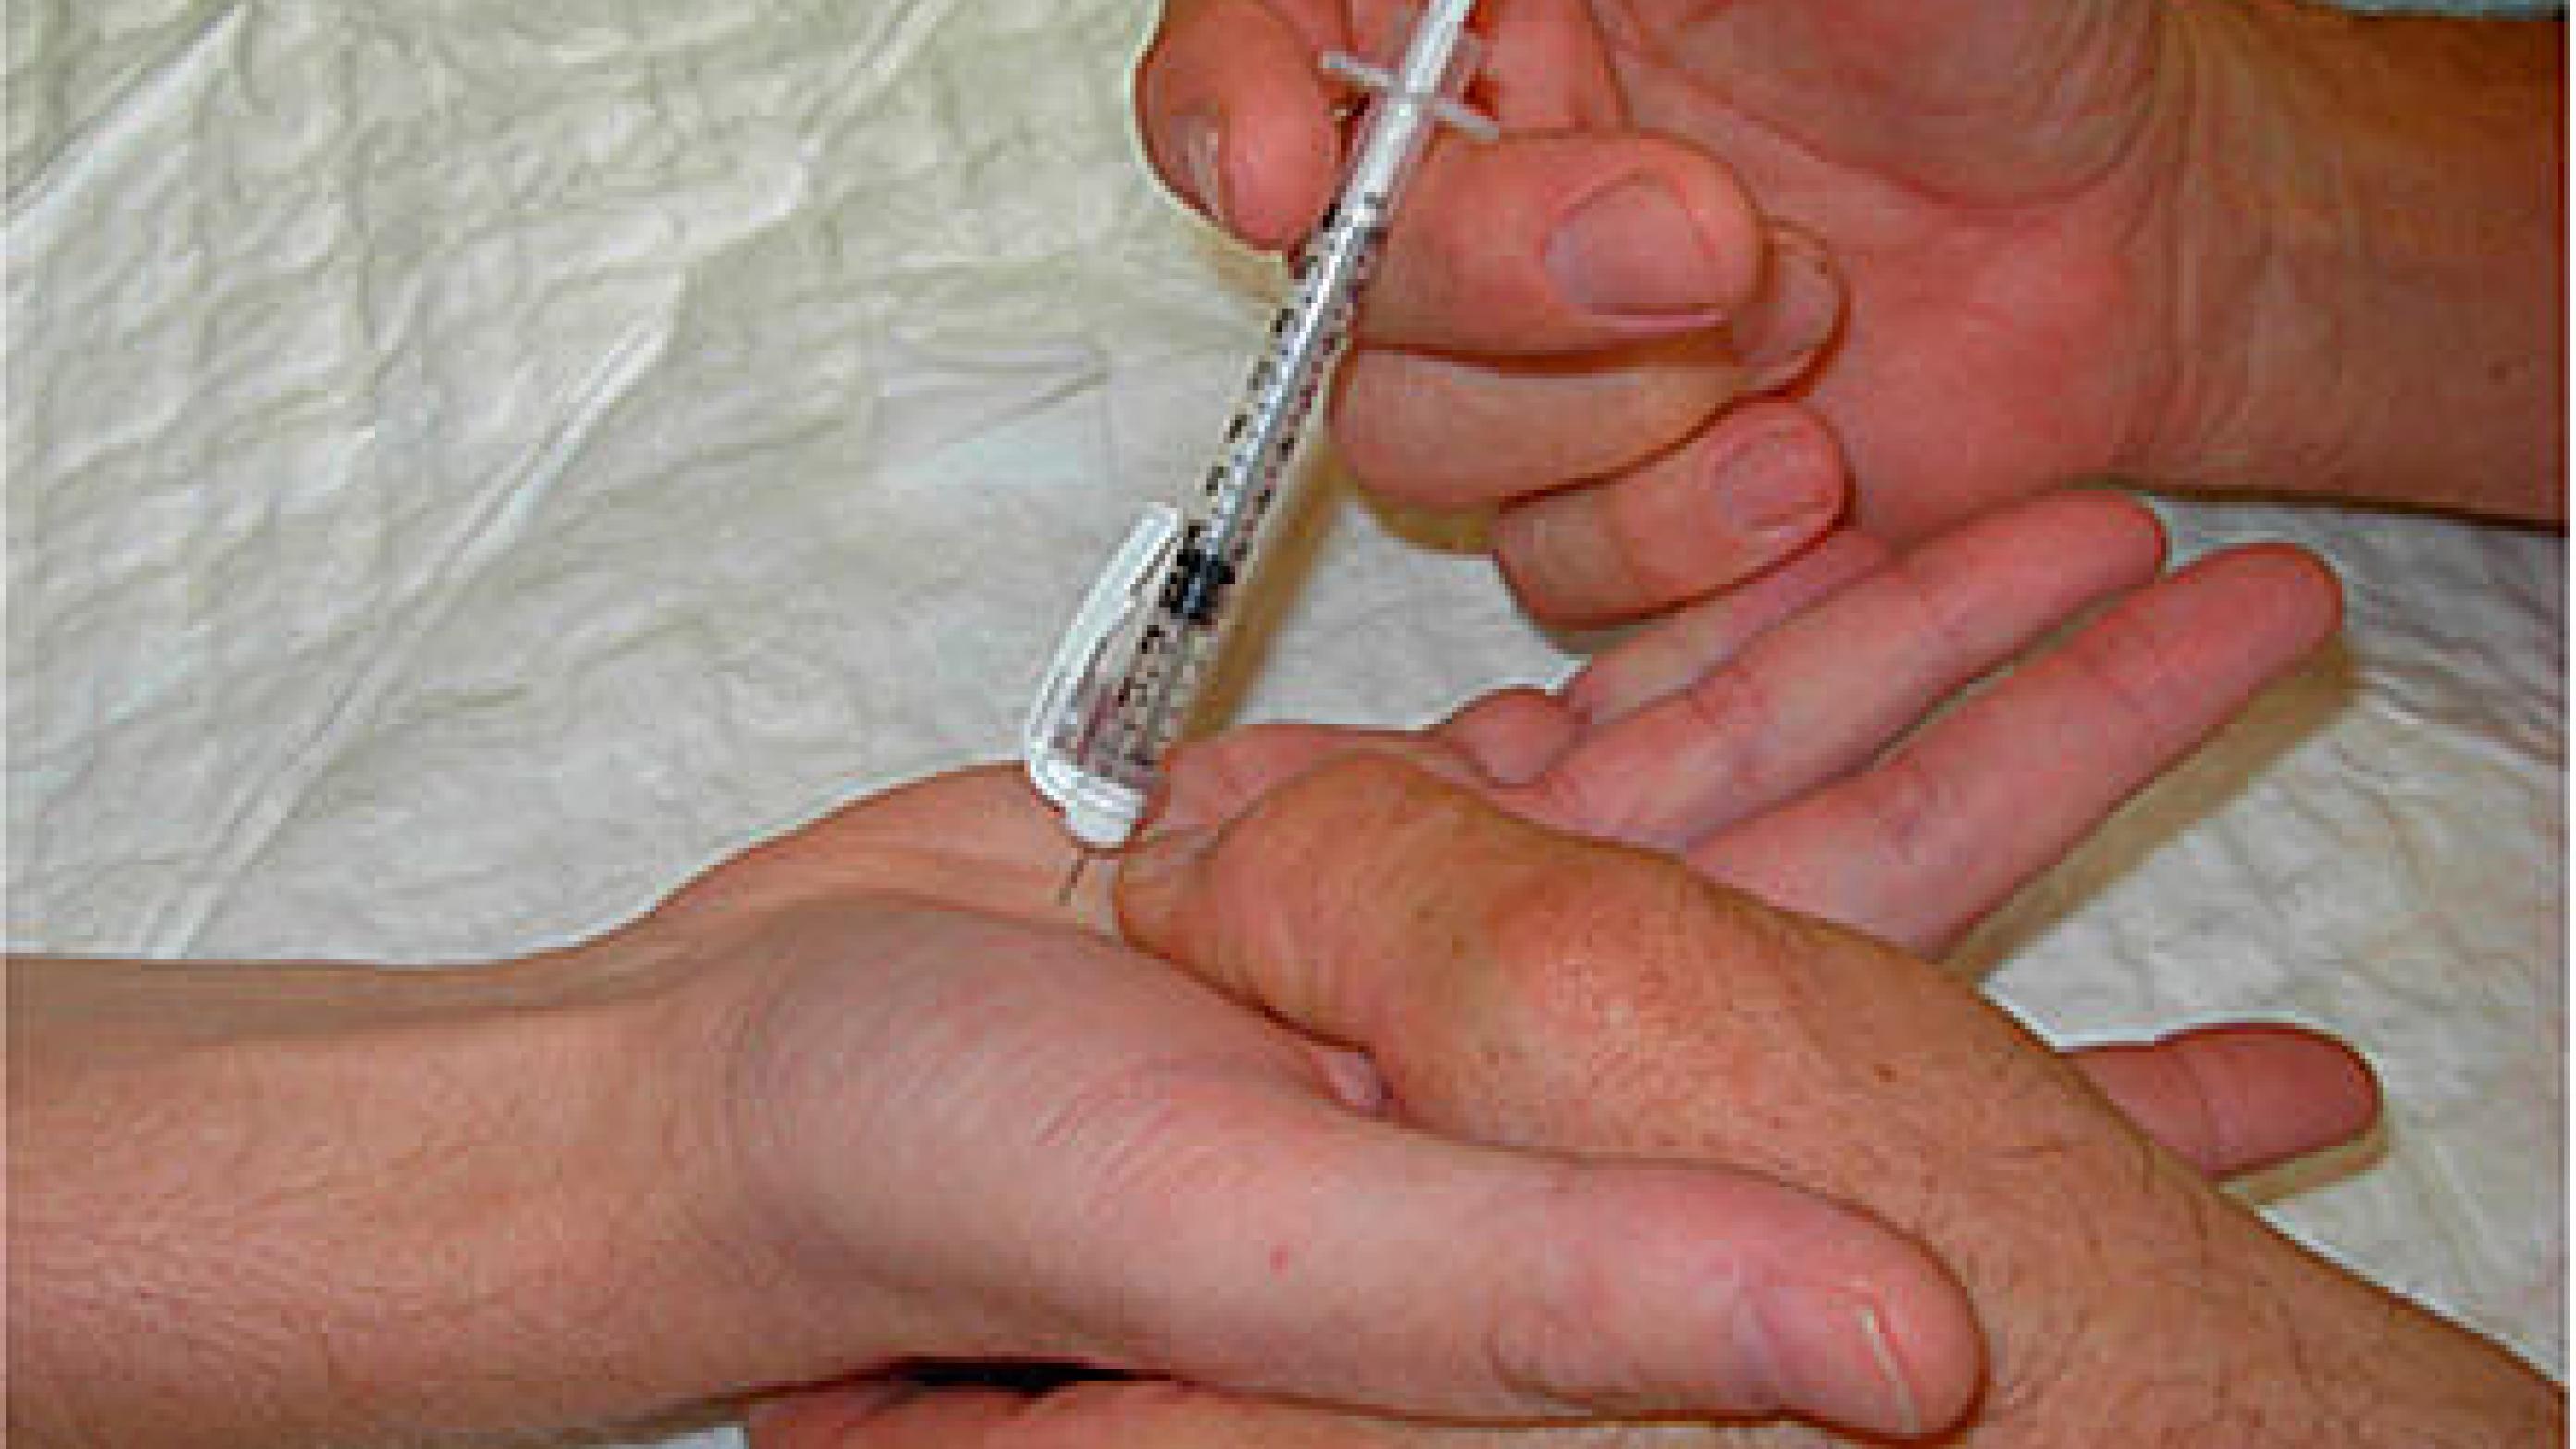 Injektion af kollagenase til behandling af Dupuytrens kontraktur.